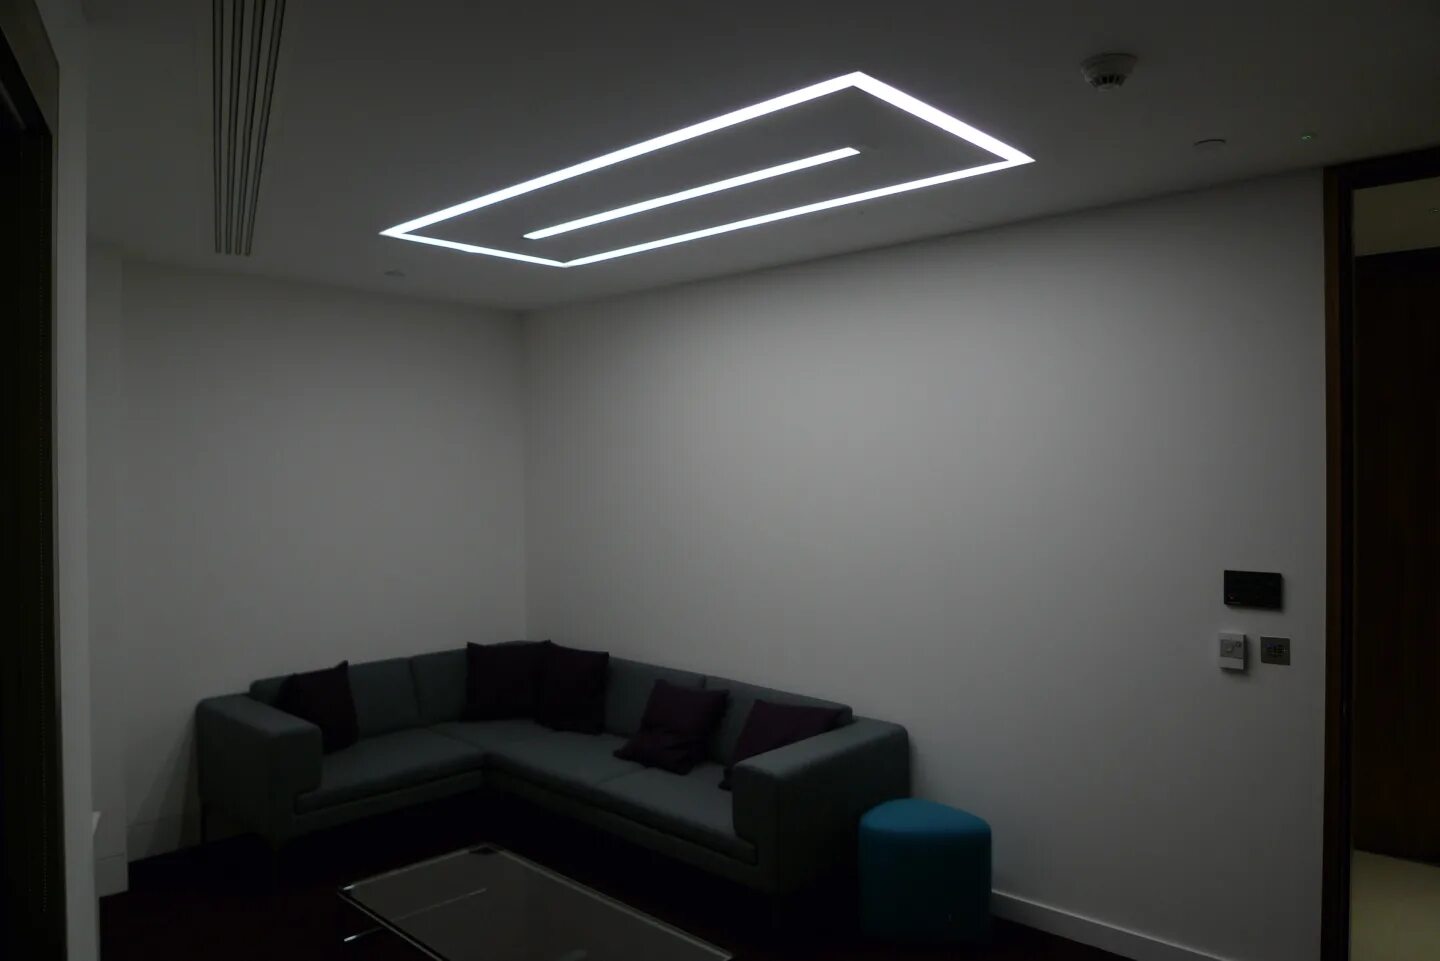 Свет от световых линий. Потолок с подсветкой. Линейный светильник. Световая подсветка потолка. Подсветка потолка полосами.